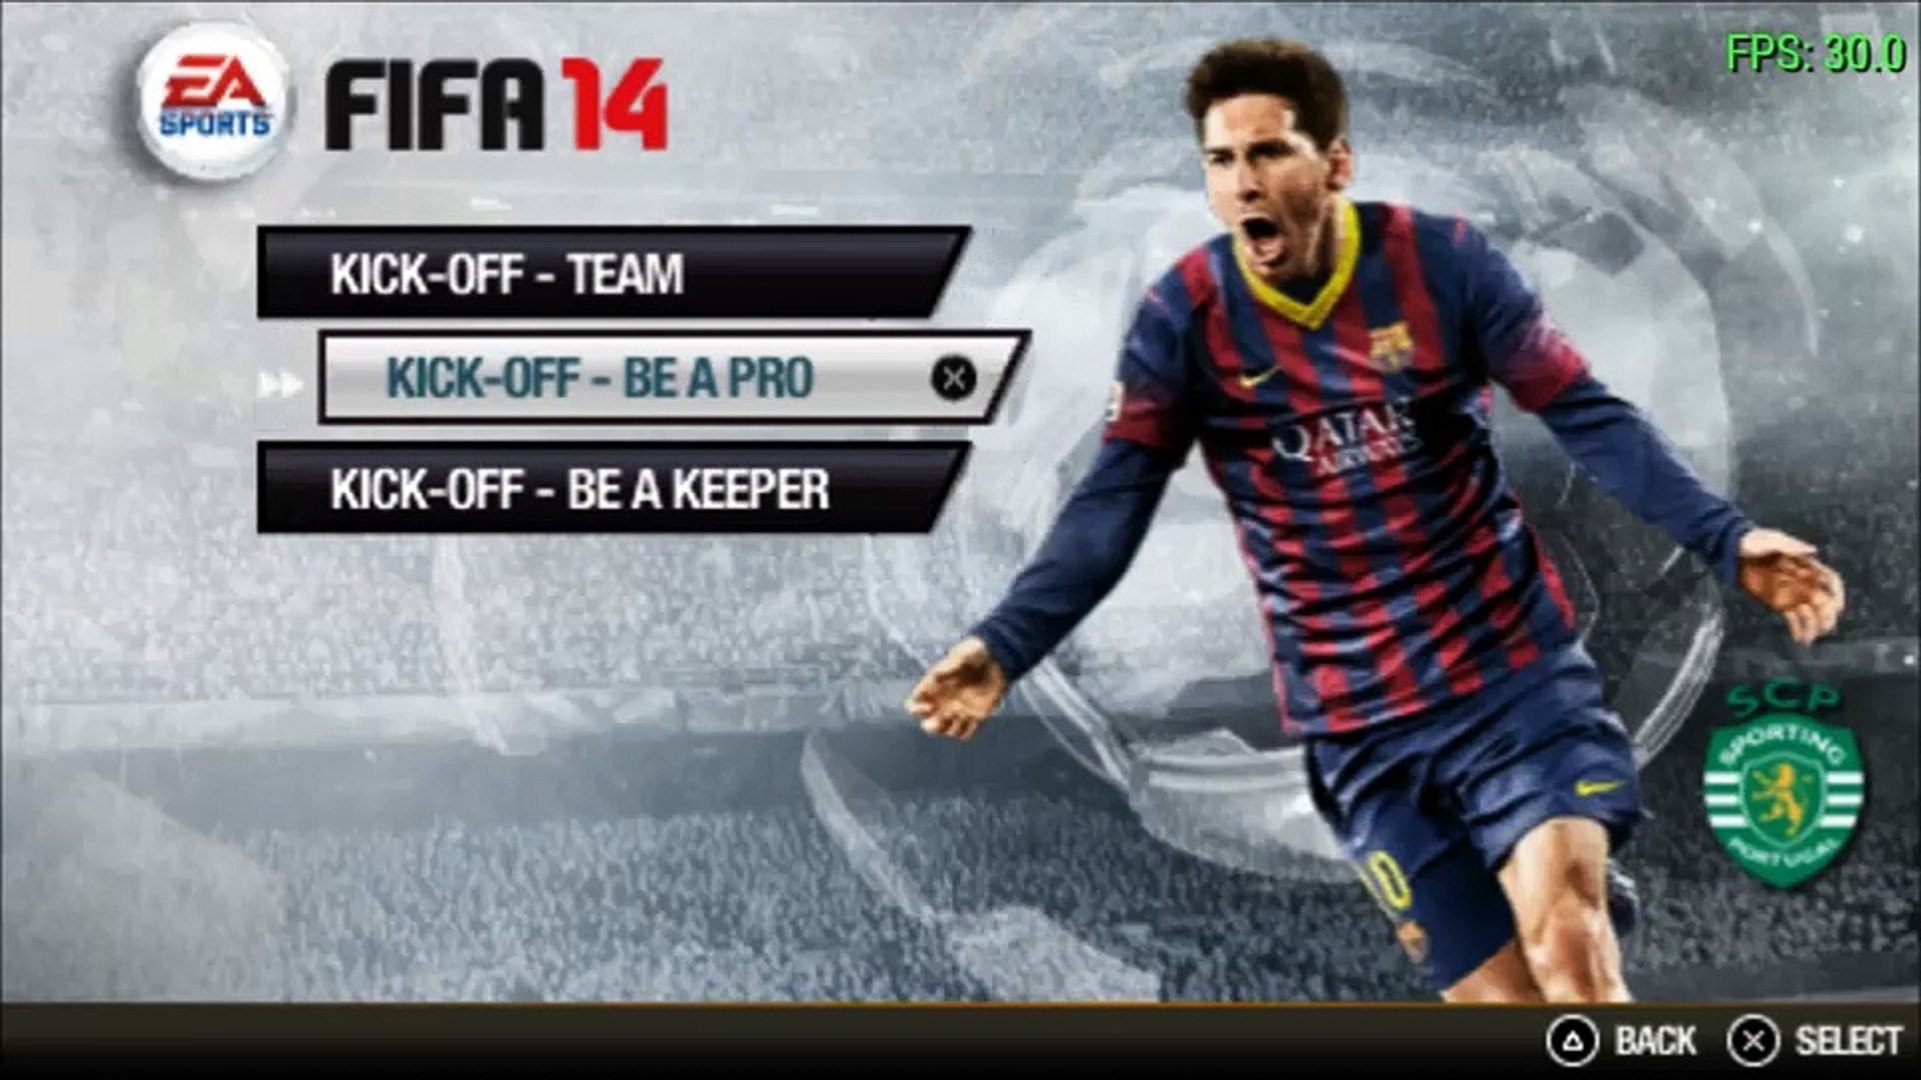 Atualização para o FIFA 14 (PSP) Janeiro 2015 - Vídeo Dailymotion